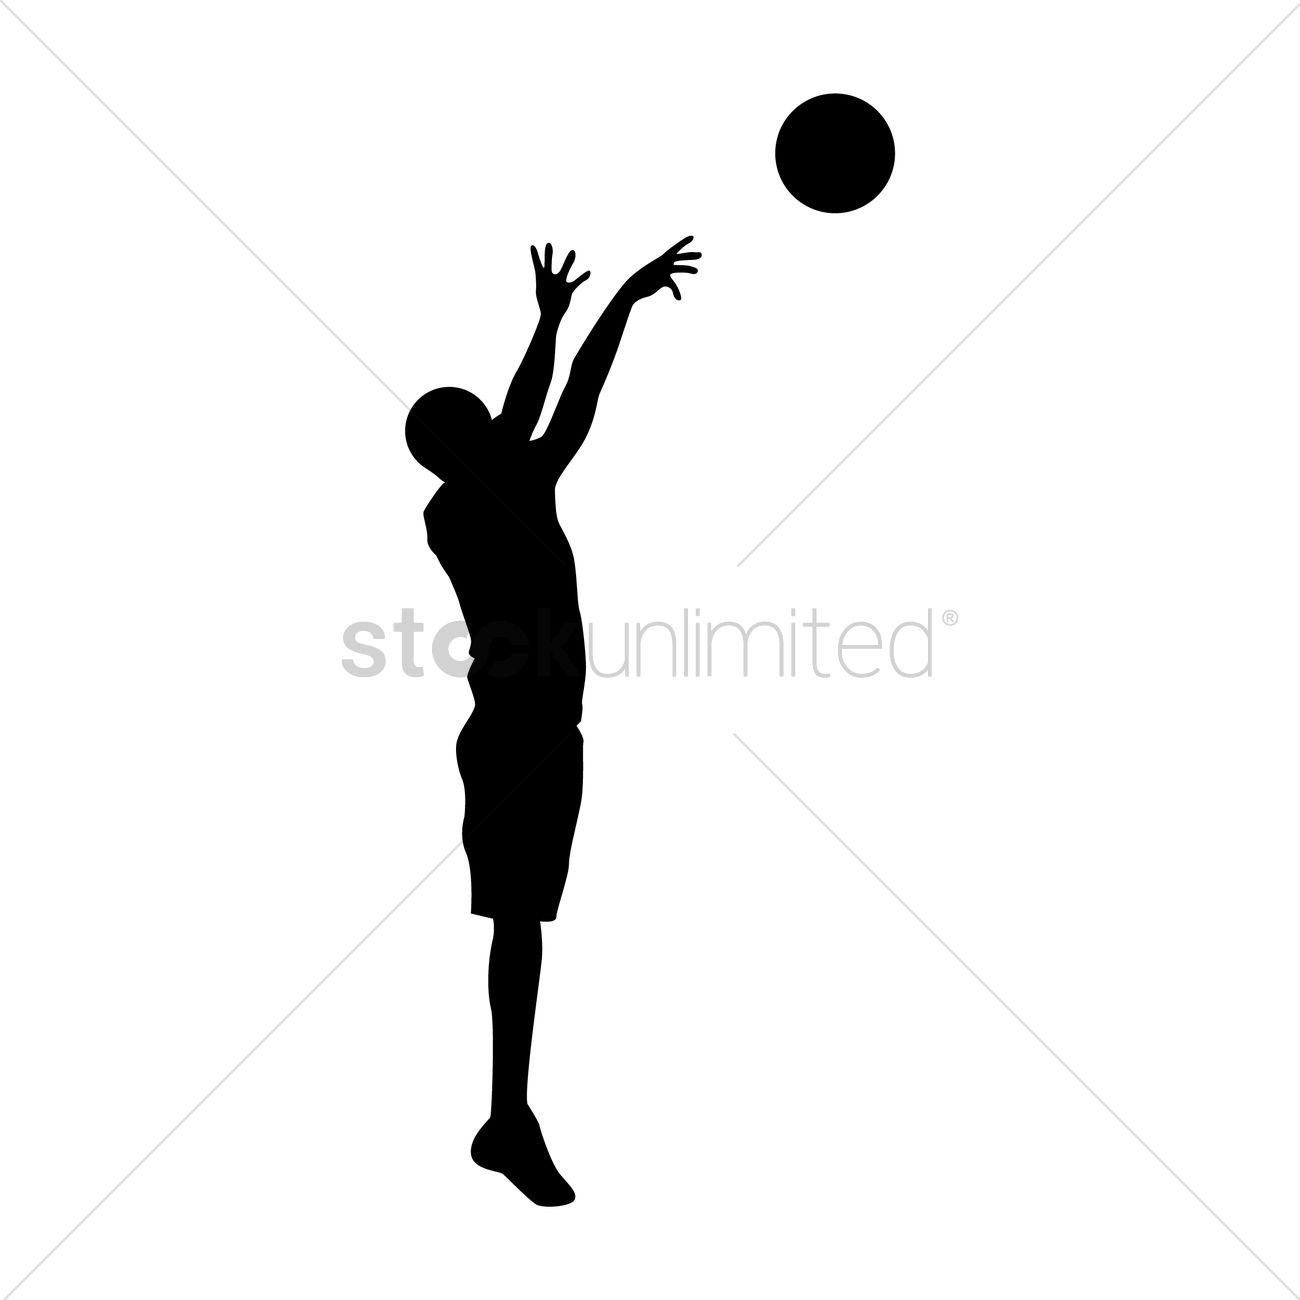 Basketball player throwing the ball Vector Image